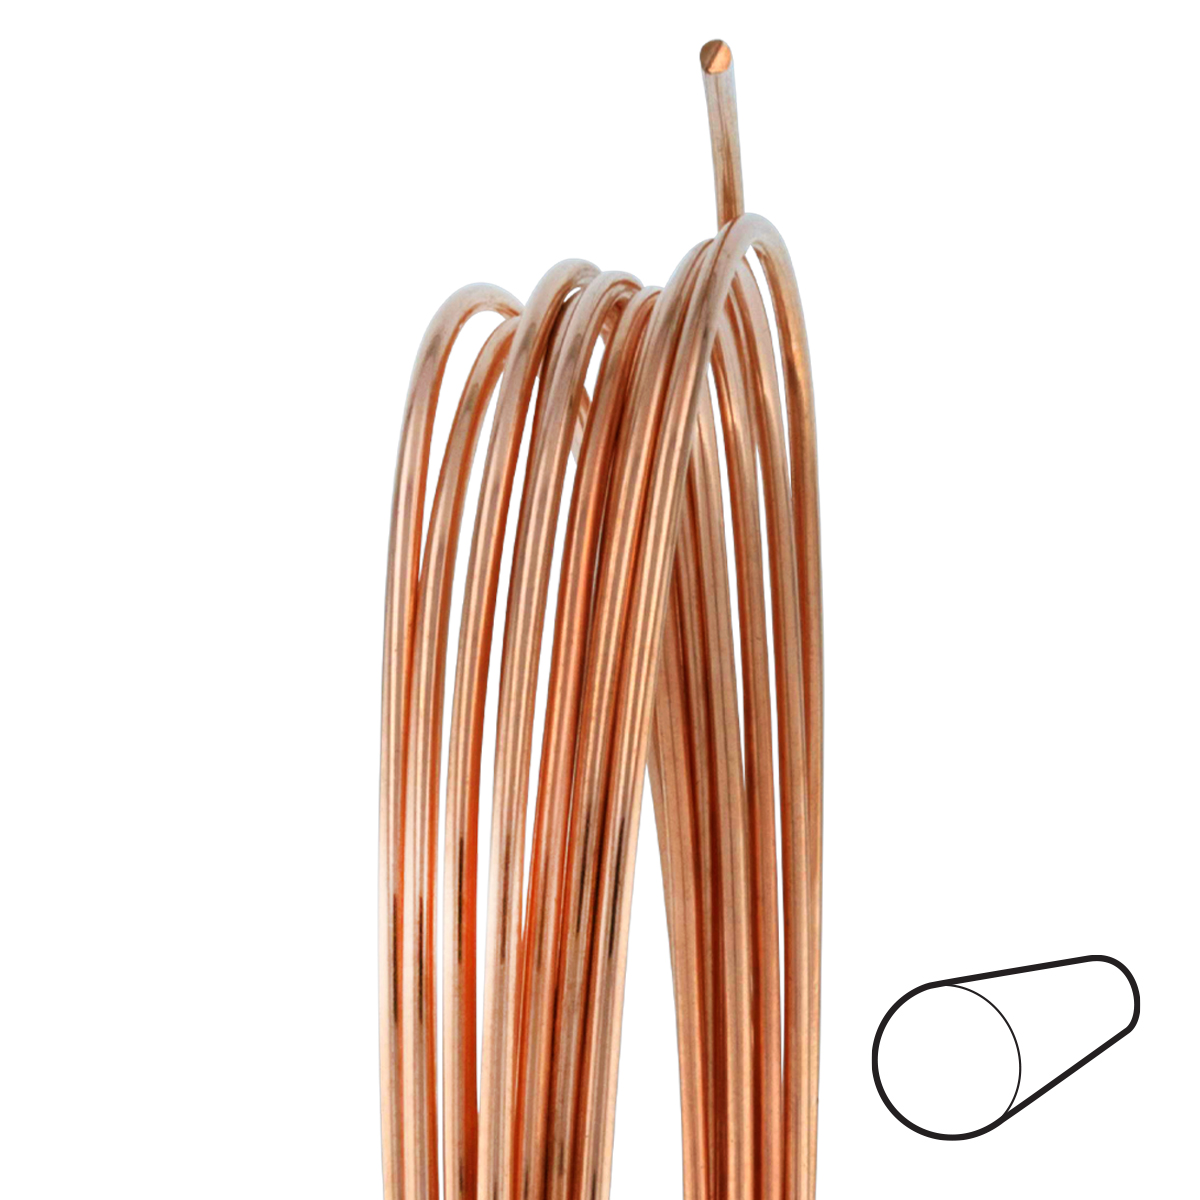 22 Gauge Round Half Hard Copper Wire: Wire Jewelry, Wire Wrap Tutorials